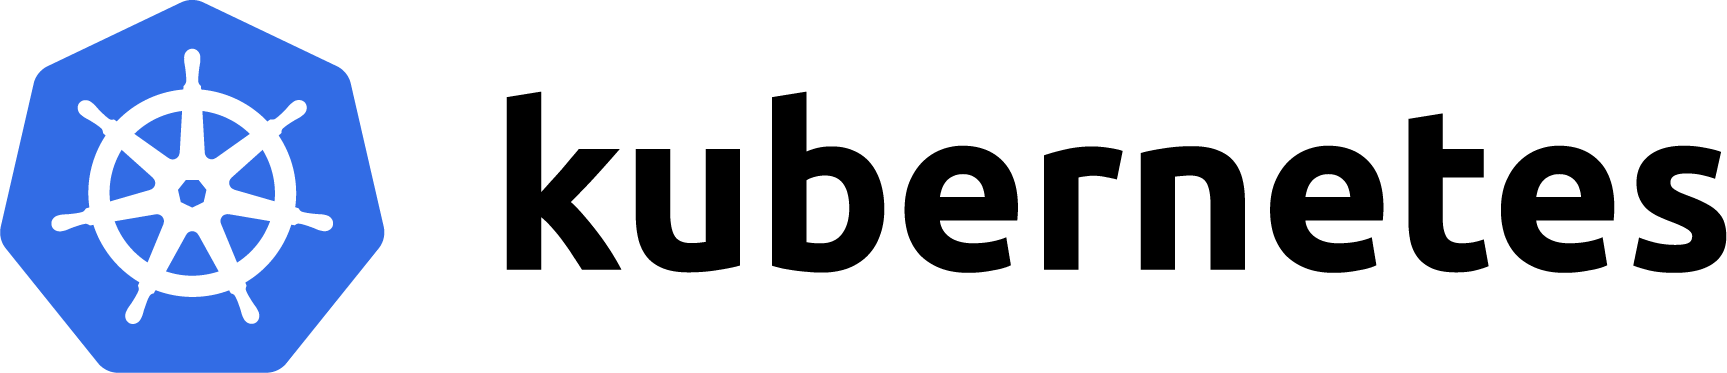 k8s-logo.png